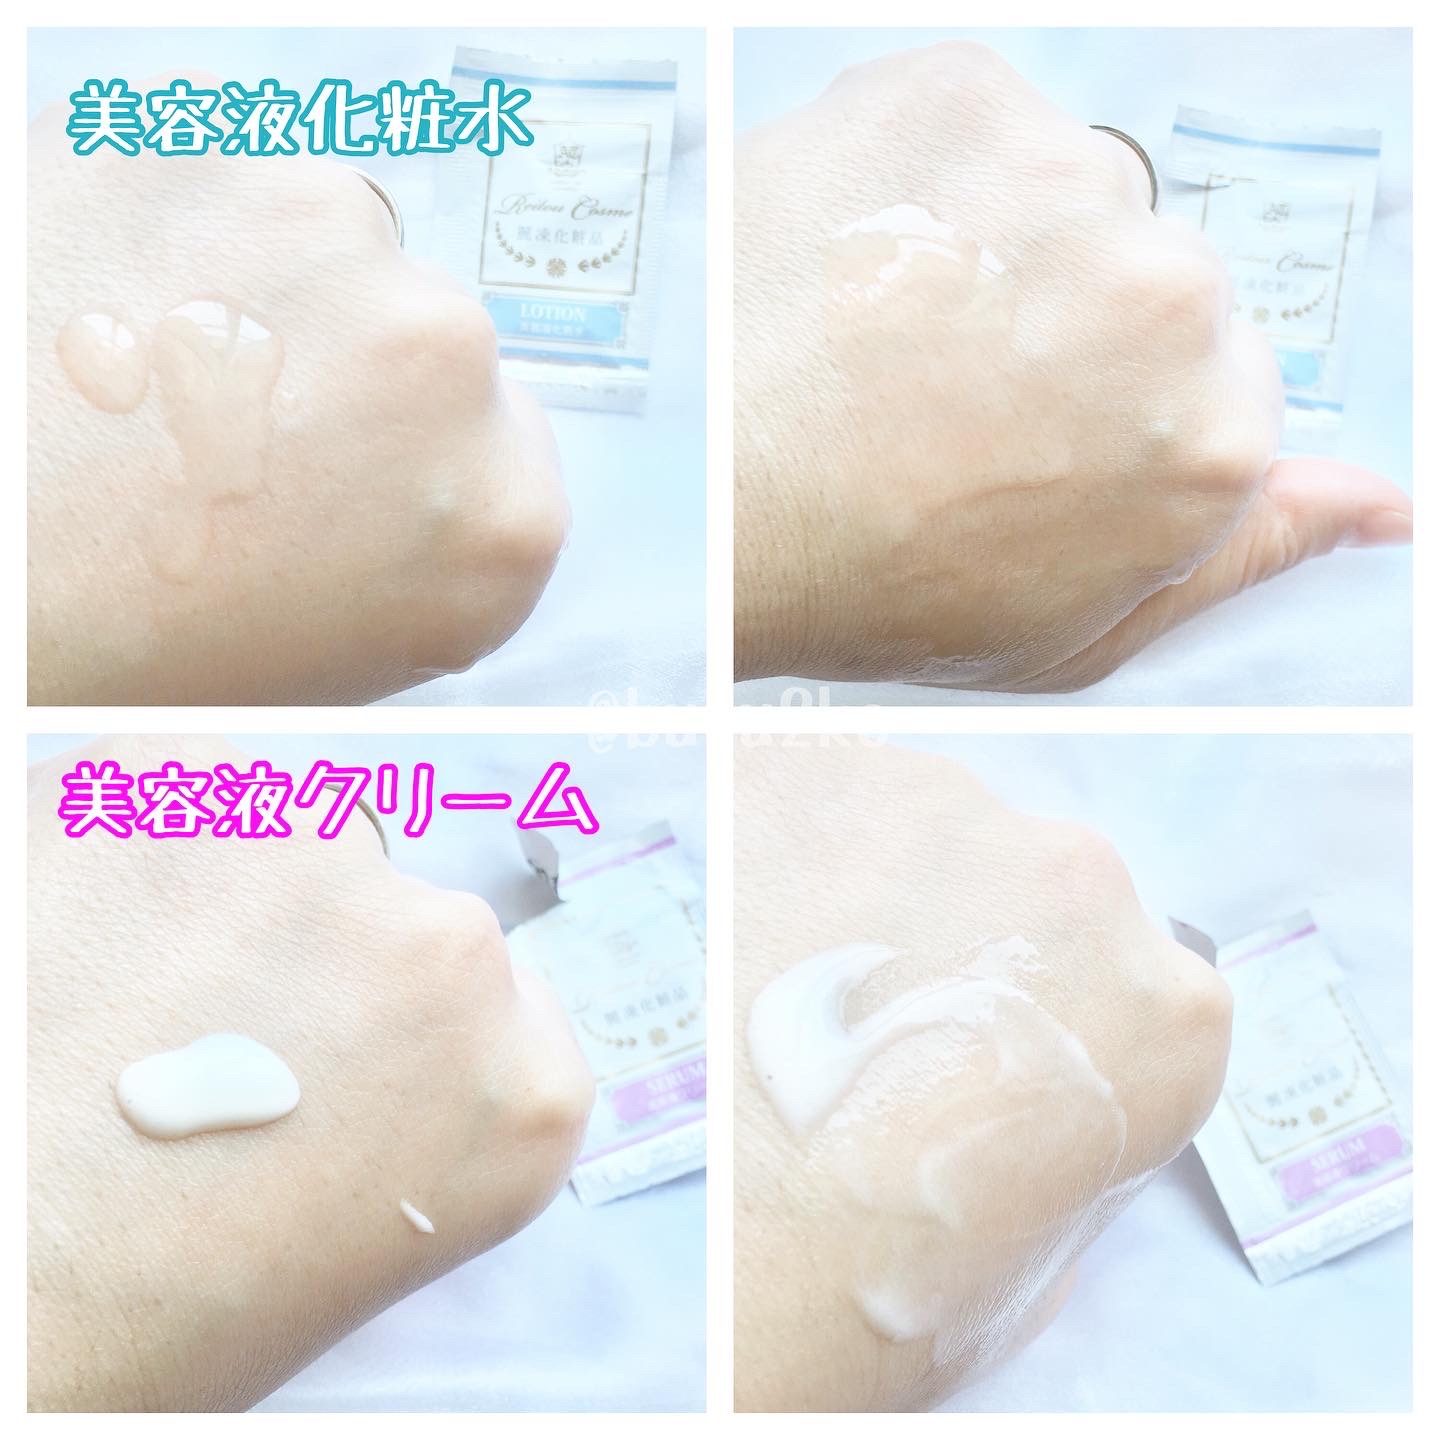 麗凍化粧品(Reitou Cosme) トライアルセットを使ったぶるどっくさんのクチコミ画像7